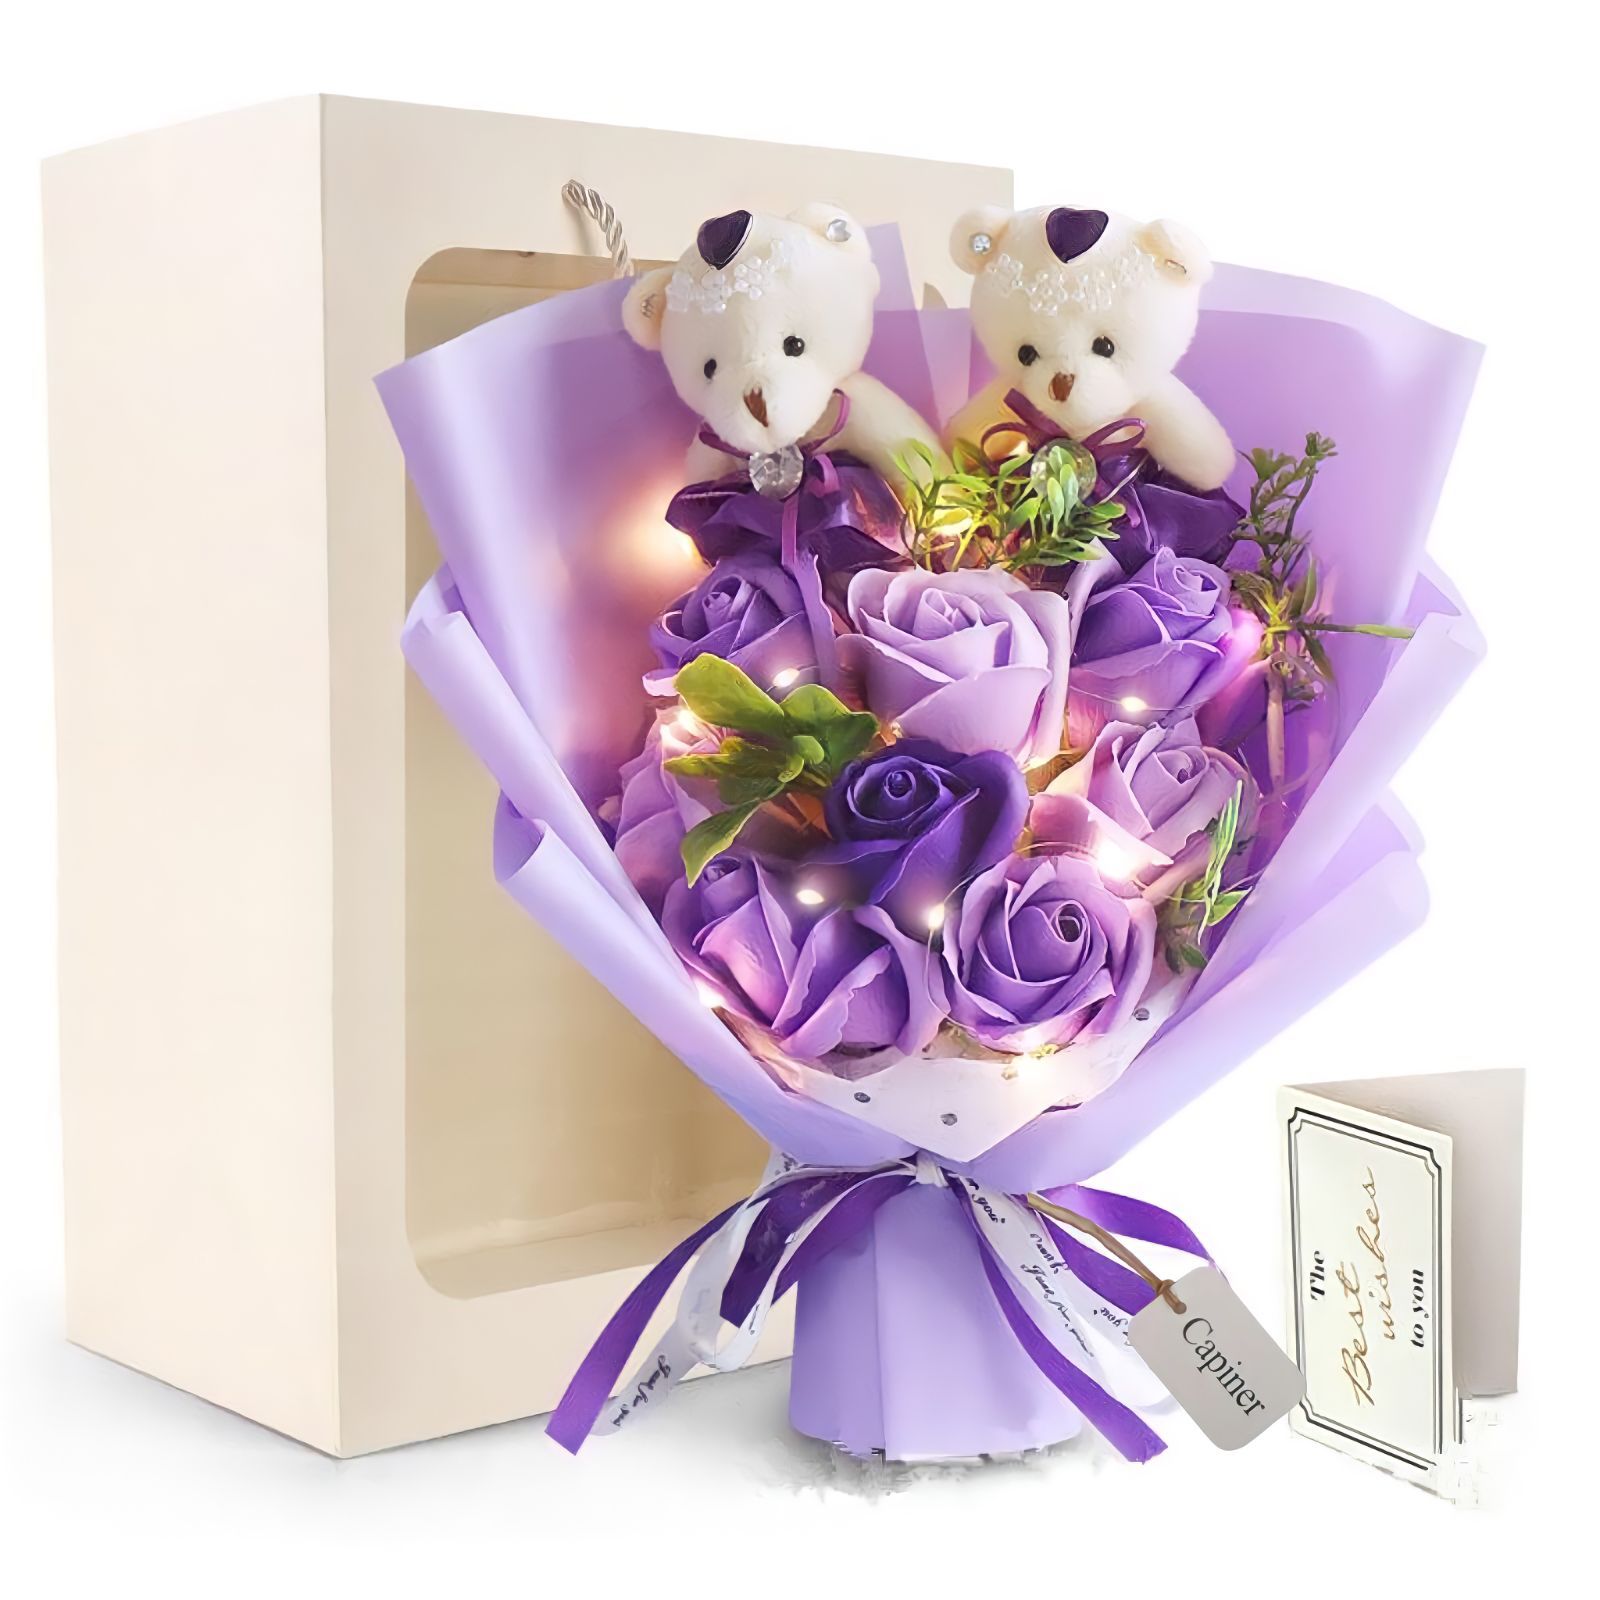 ◇新品◇送料無料◇ソープフラワー 紫の薔薇 LED 花束 プレゼント